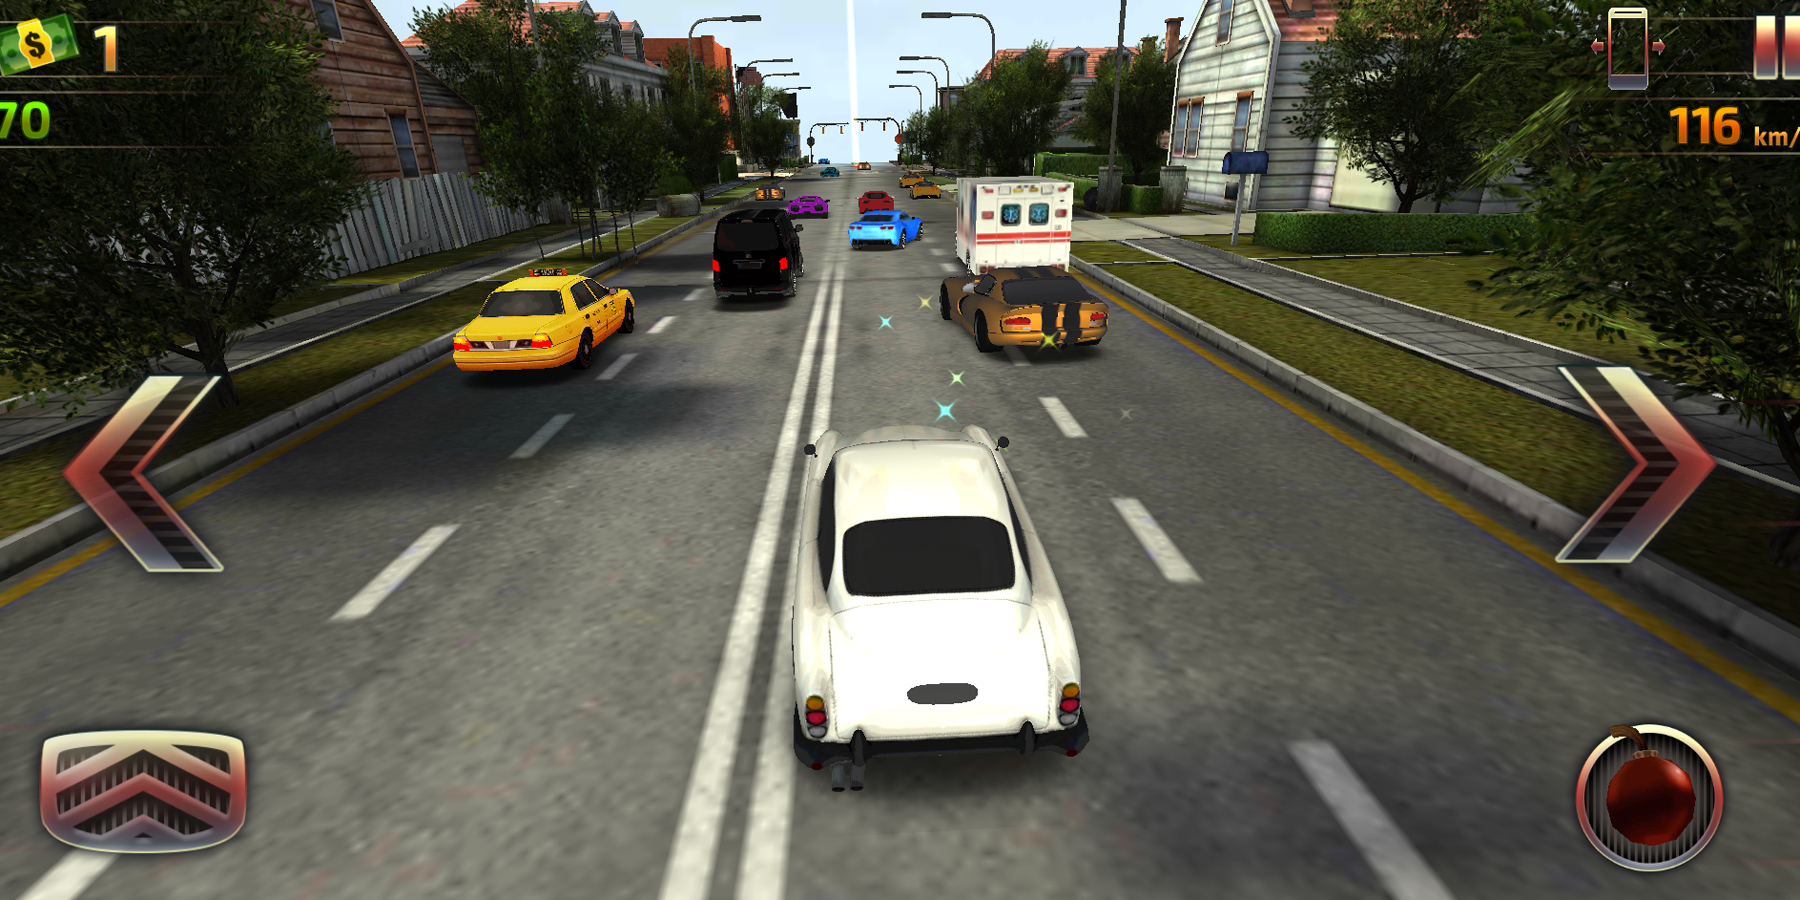 Screenshot 1 of Condução de carro: corrida de alta velocidade 1.0.0